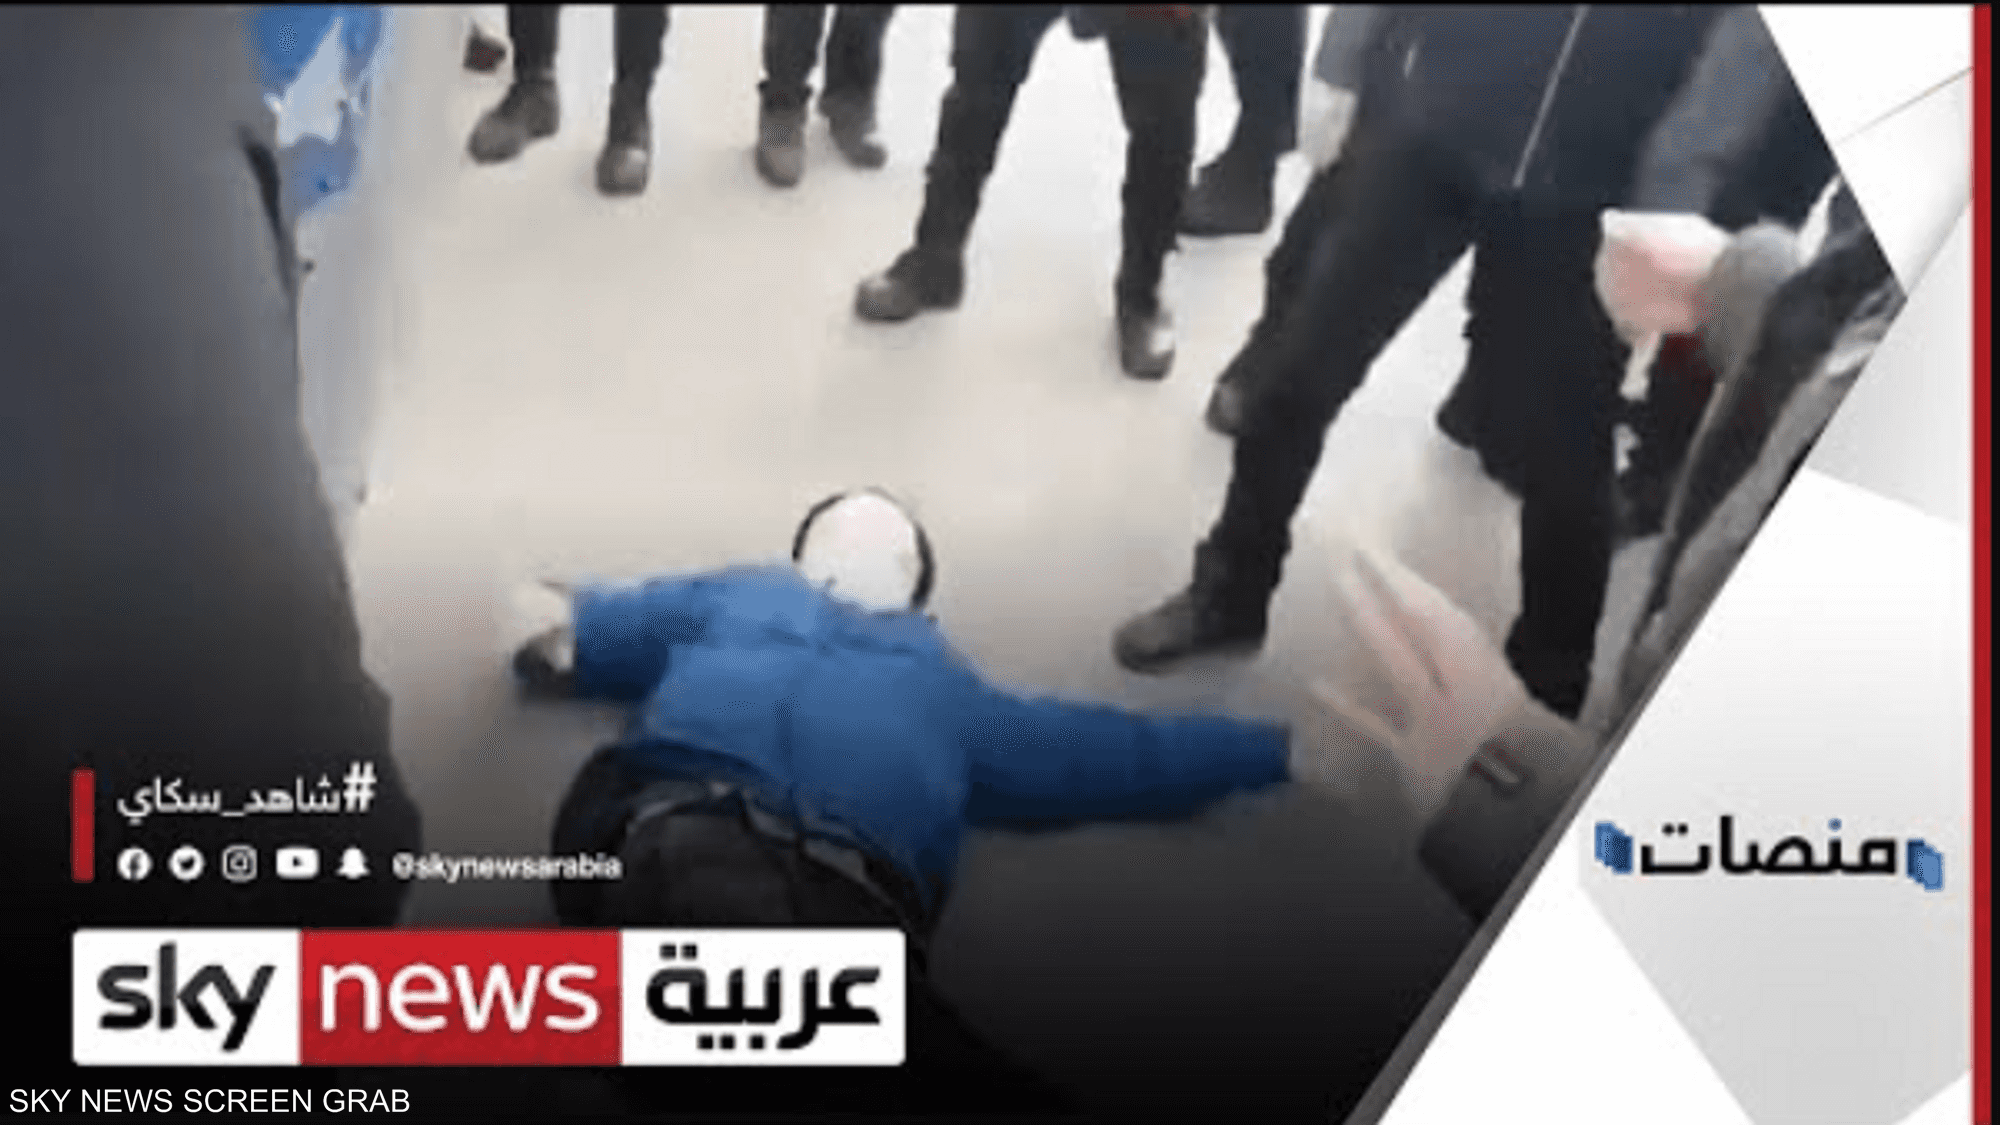 بالفيديو.. الشرطة التركية تعتدي على مقعد بالضرب